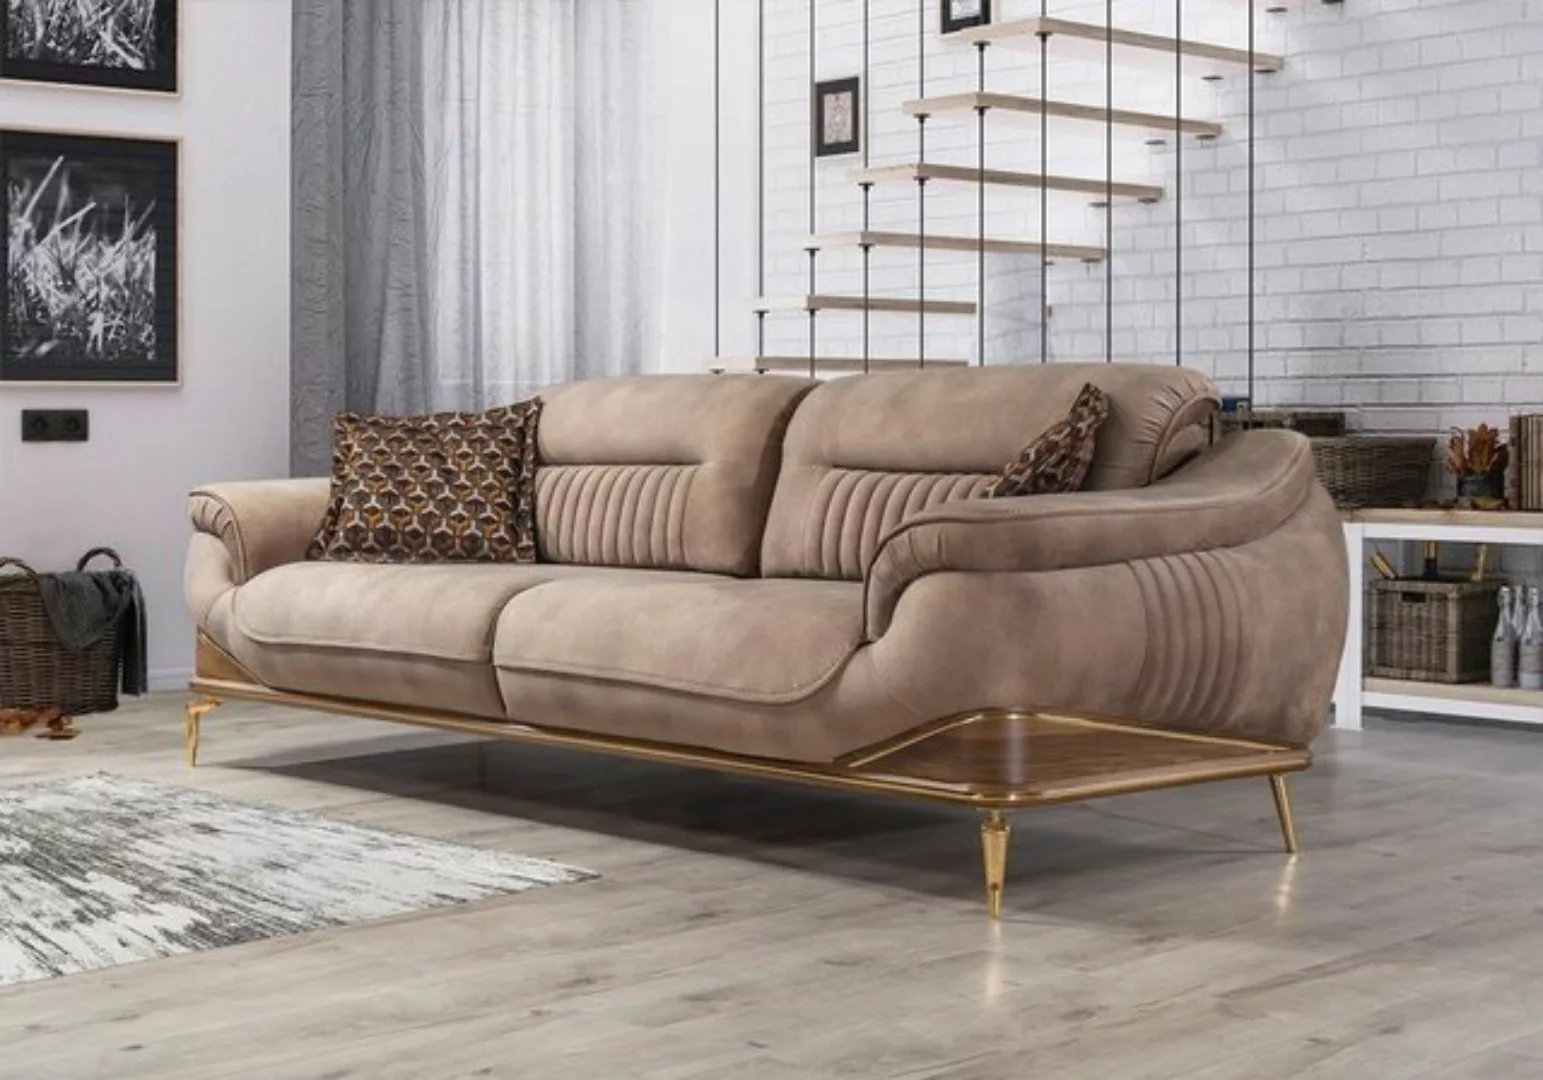 JVmoebel Sofa Wohnzimmer Neu Sofa Dreisitzer Modern Sofas Couch Luxus Einri günstig online kaufen